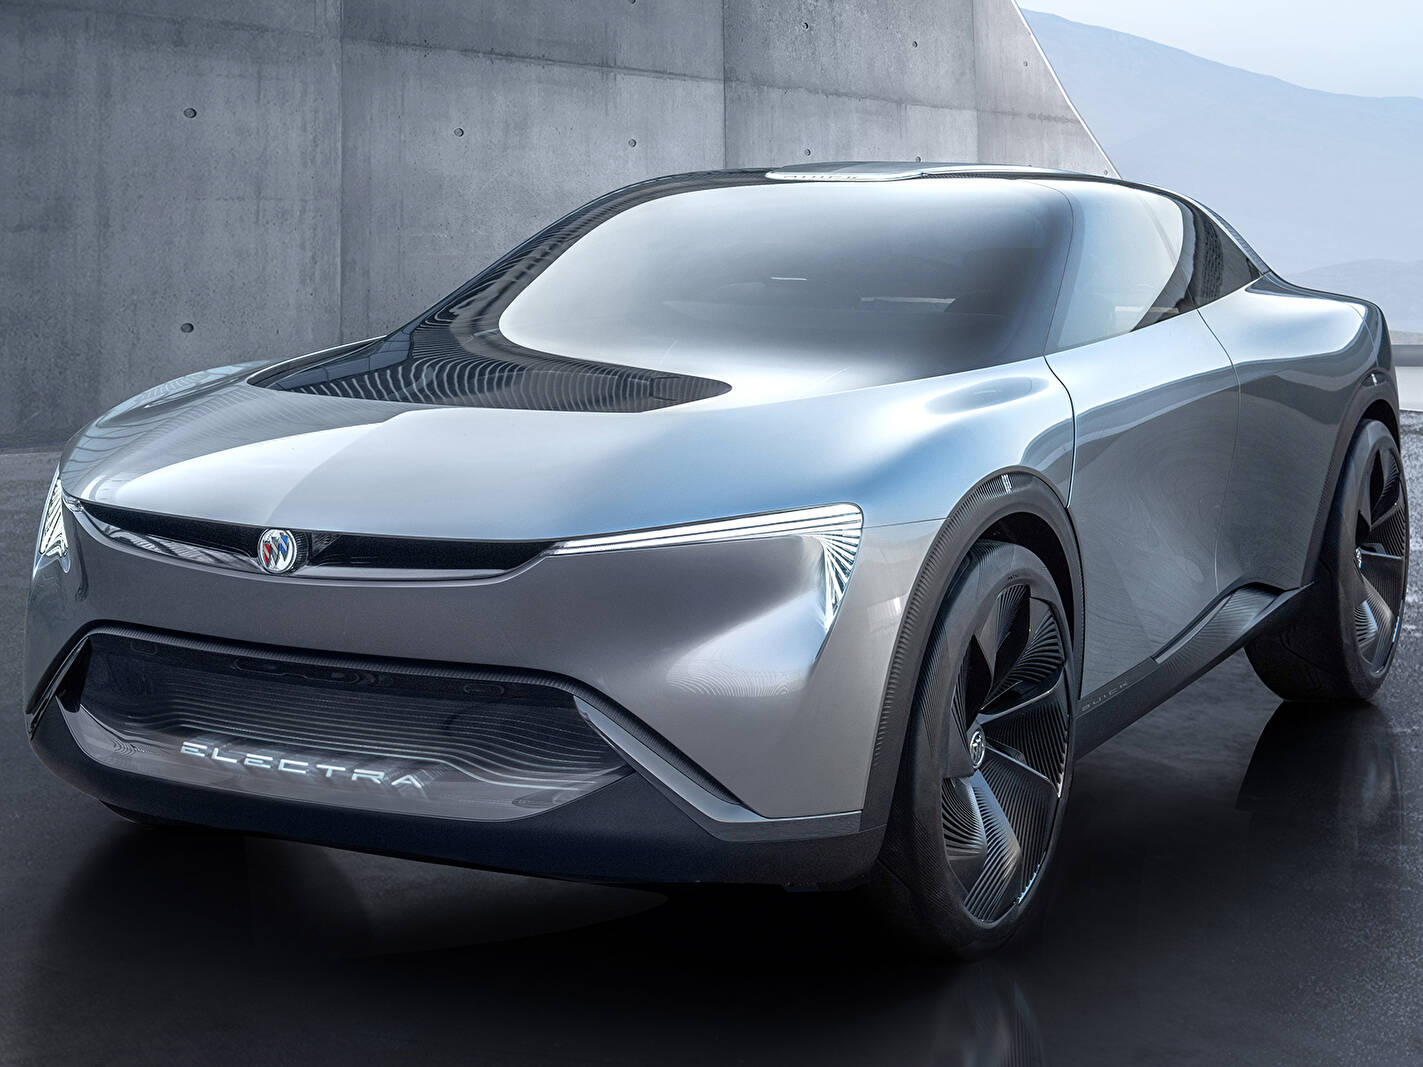 Fiche technique Buick Electra Concept (2020)